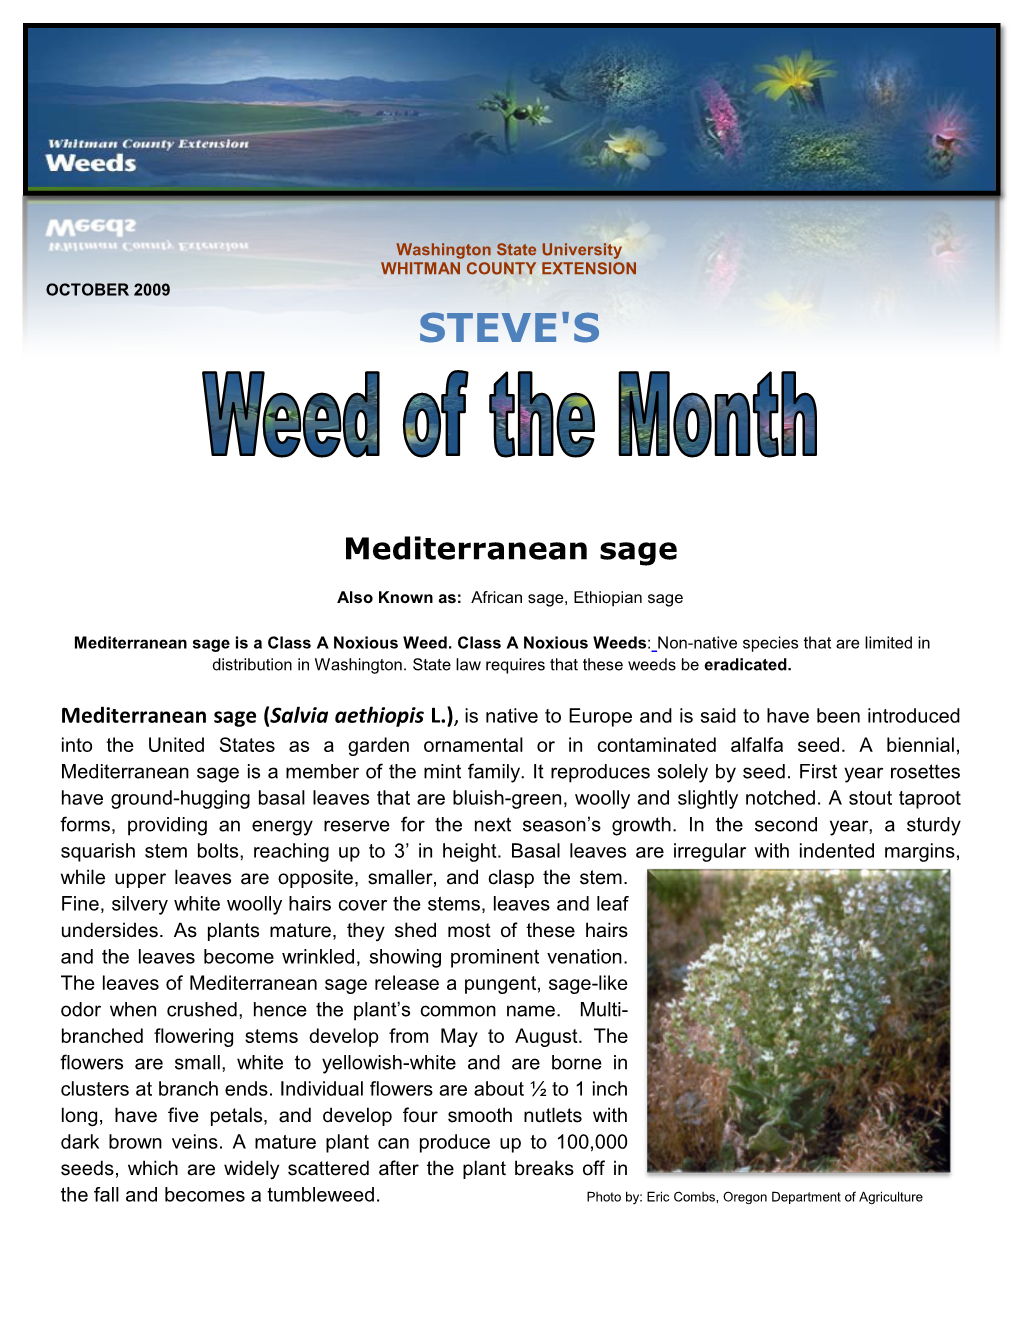 Mediterranean Sage